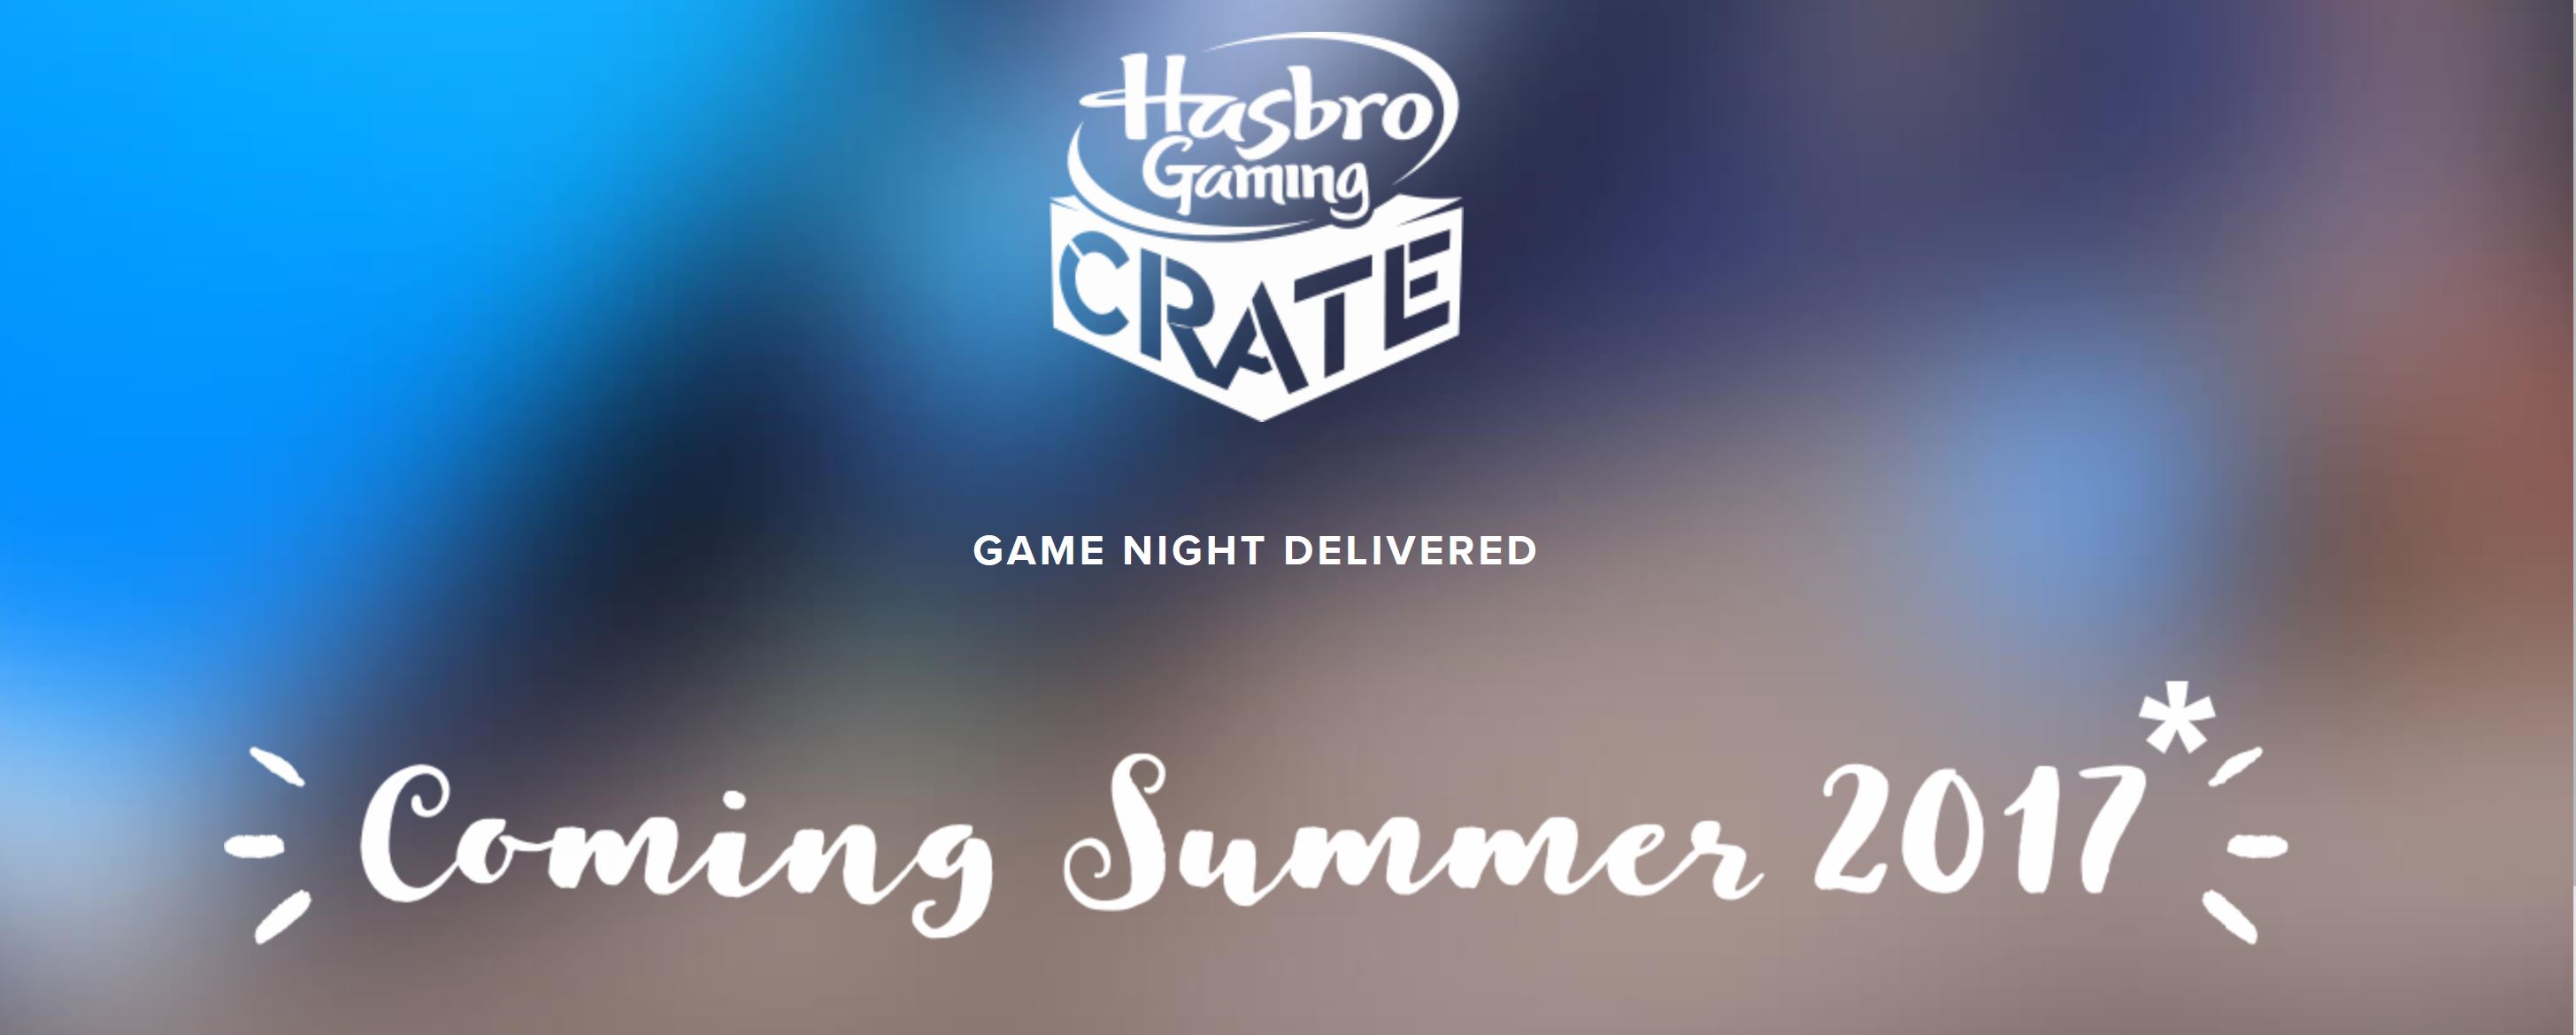 hasbro-gaming-crate.JPG